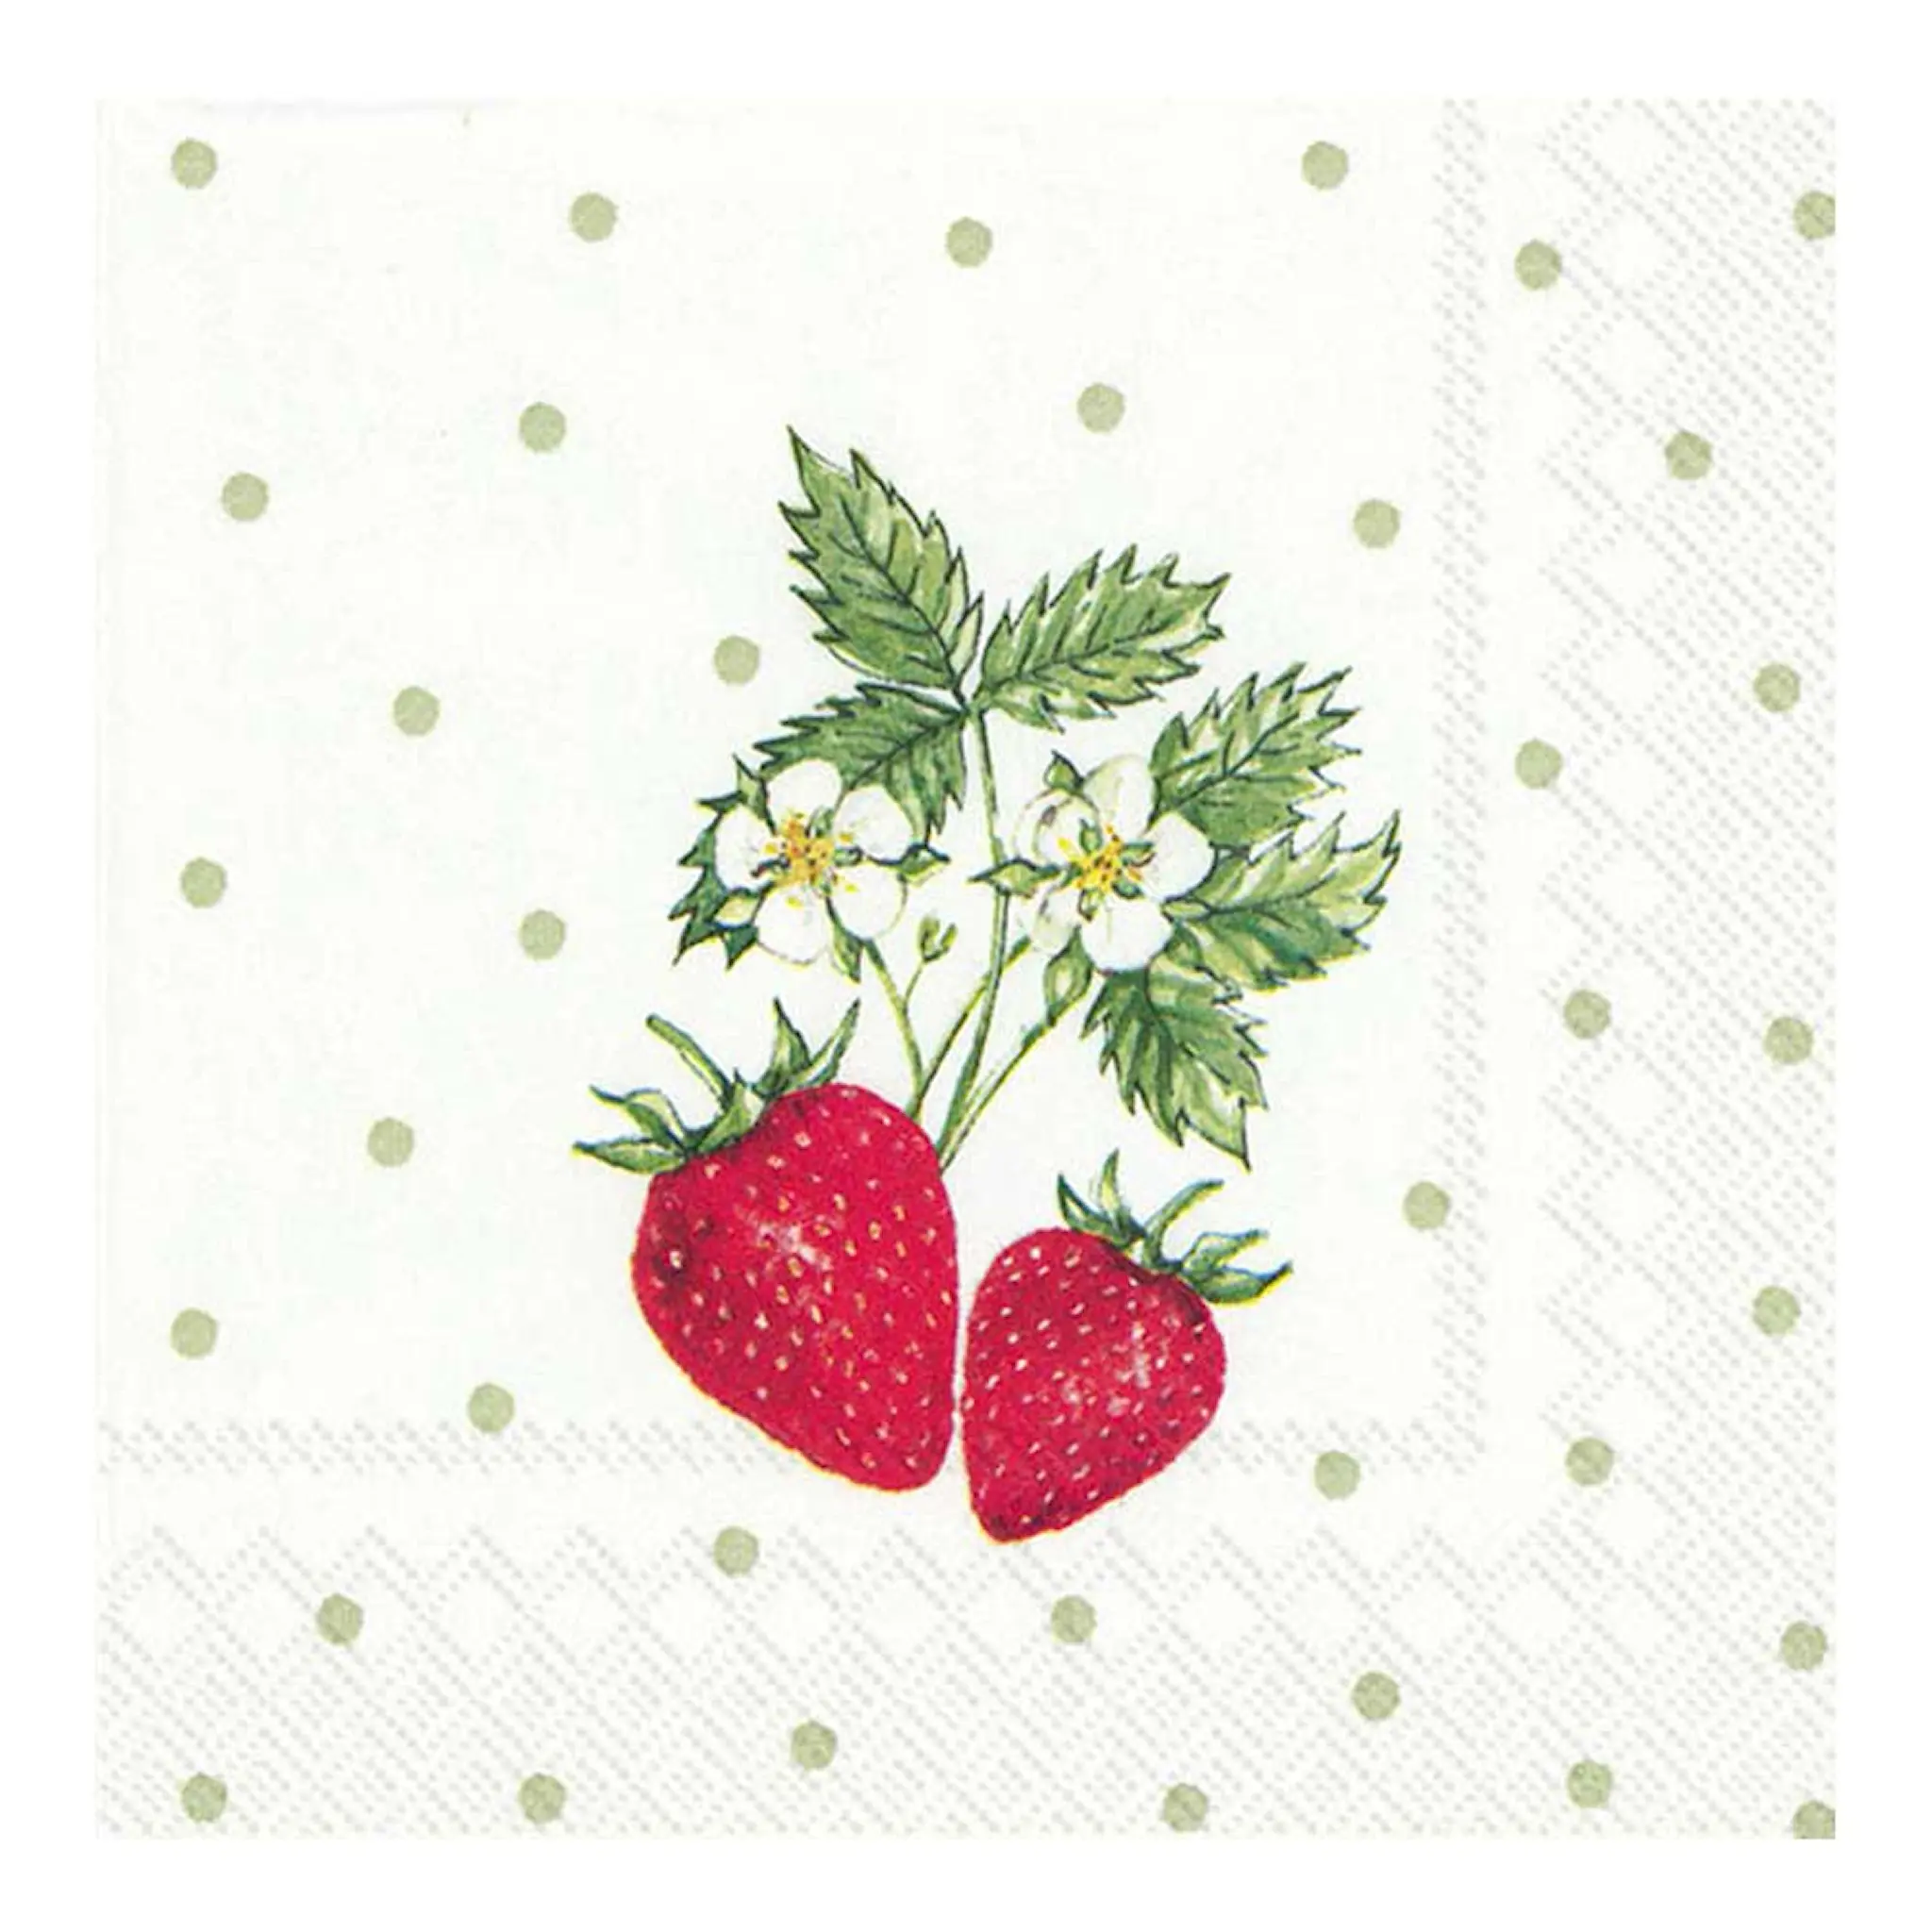 Ihr Little lovely strawberry 24x24 cm